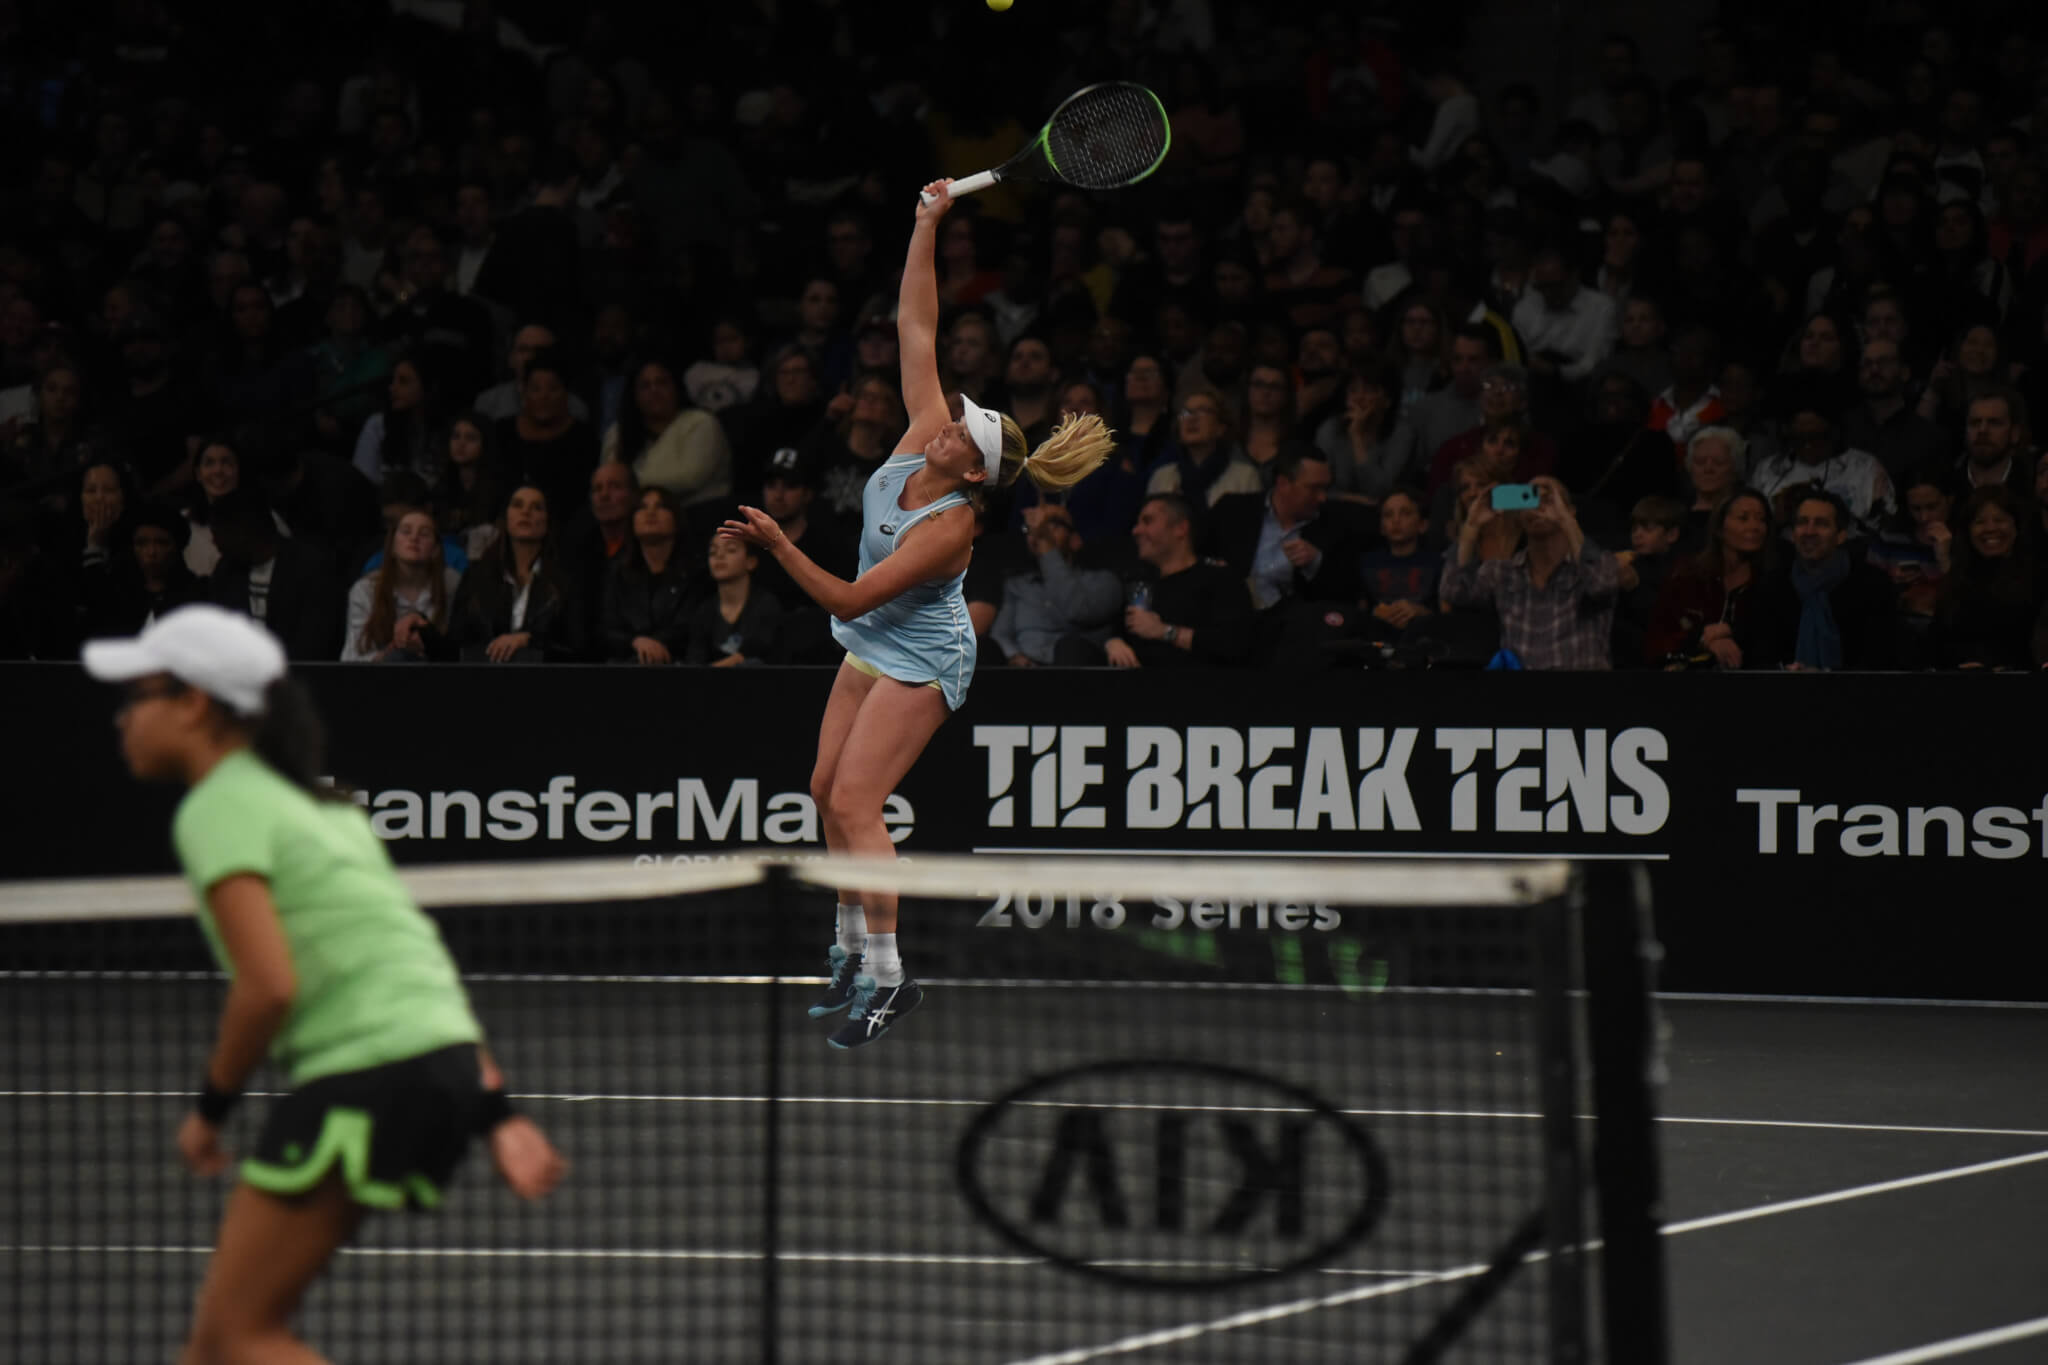 Tennis Arena: An Official Tie Break Tens Game - Tie Break Tens